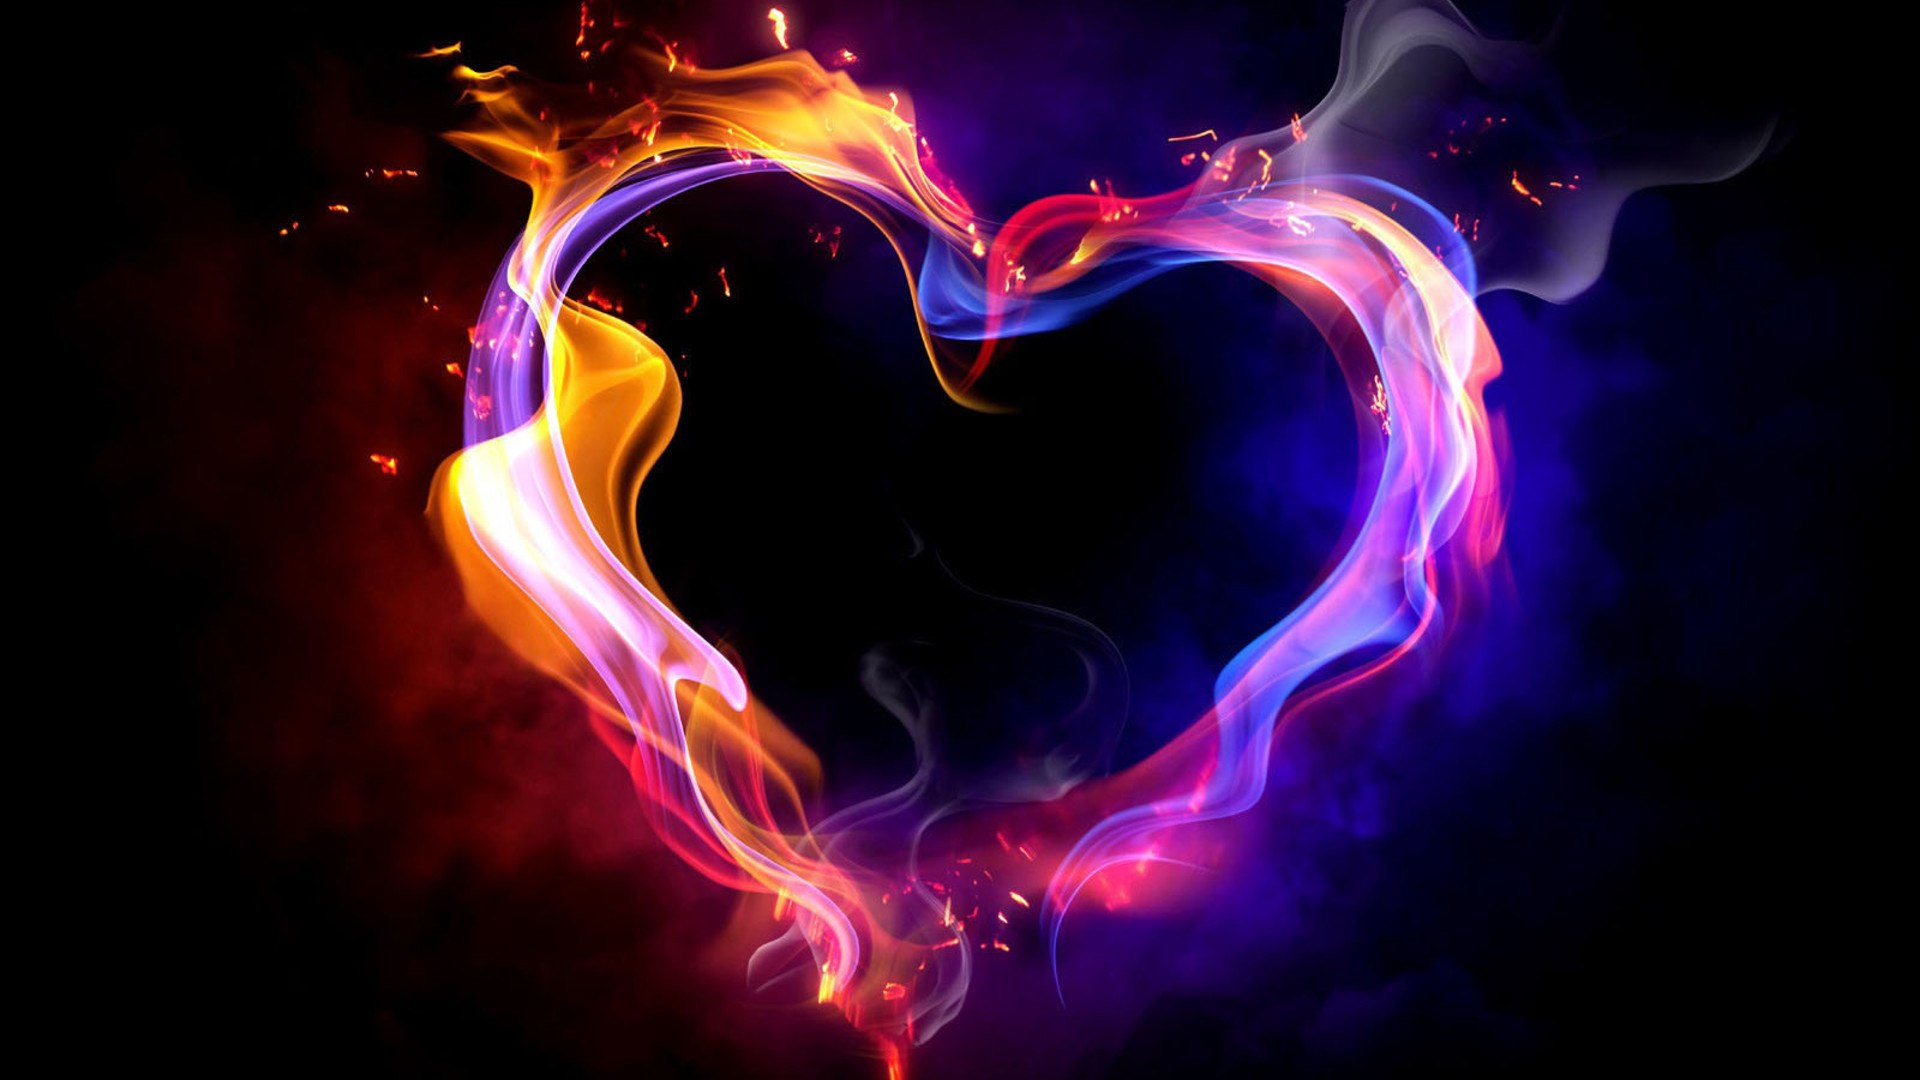 огненное сердце, абстракция, свет, любовь, яркие красивые обои на рабочий стол, Fiery heart, abstraction, light, love, bright beautiful wallpaper